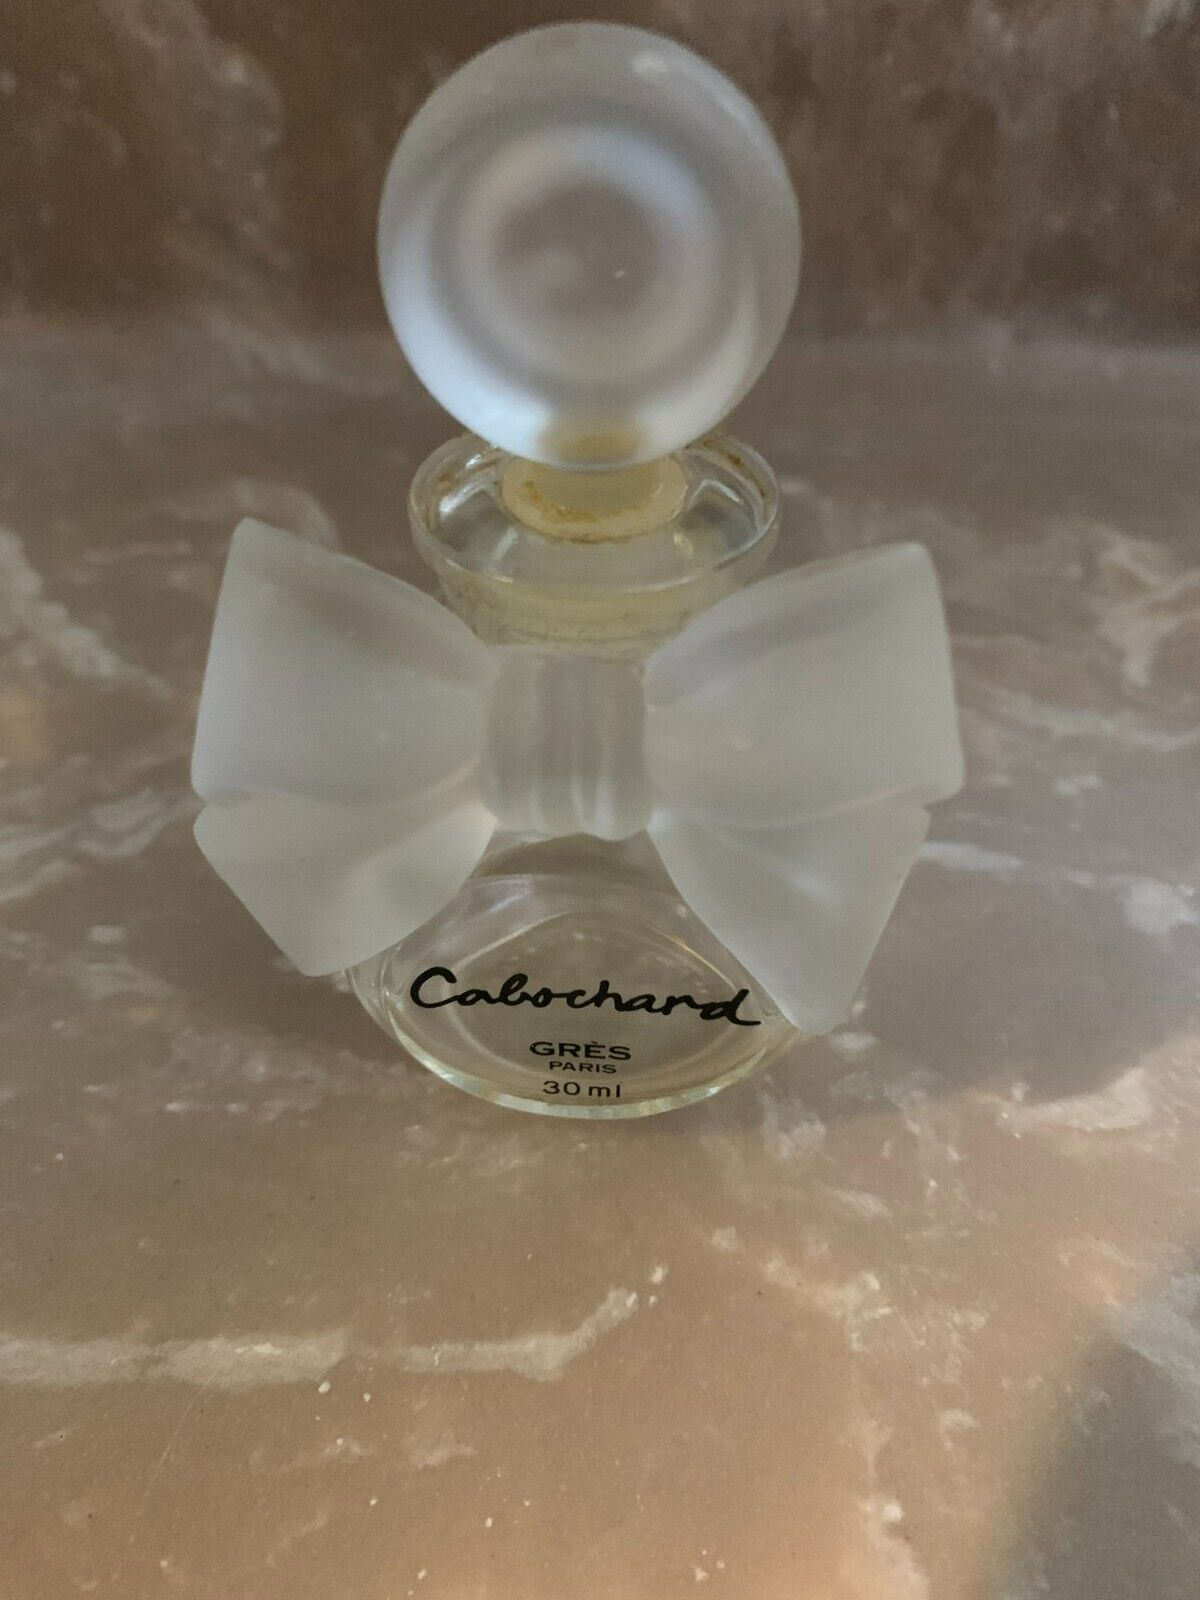 Vintage Cabochard by Gres Paris Parfum, 30 mL Bottle